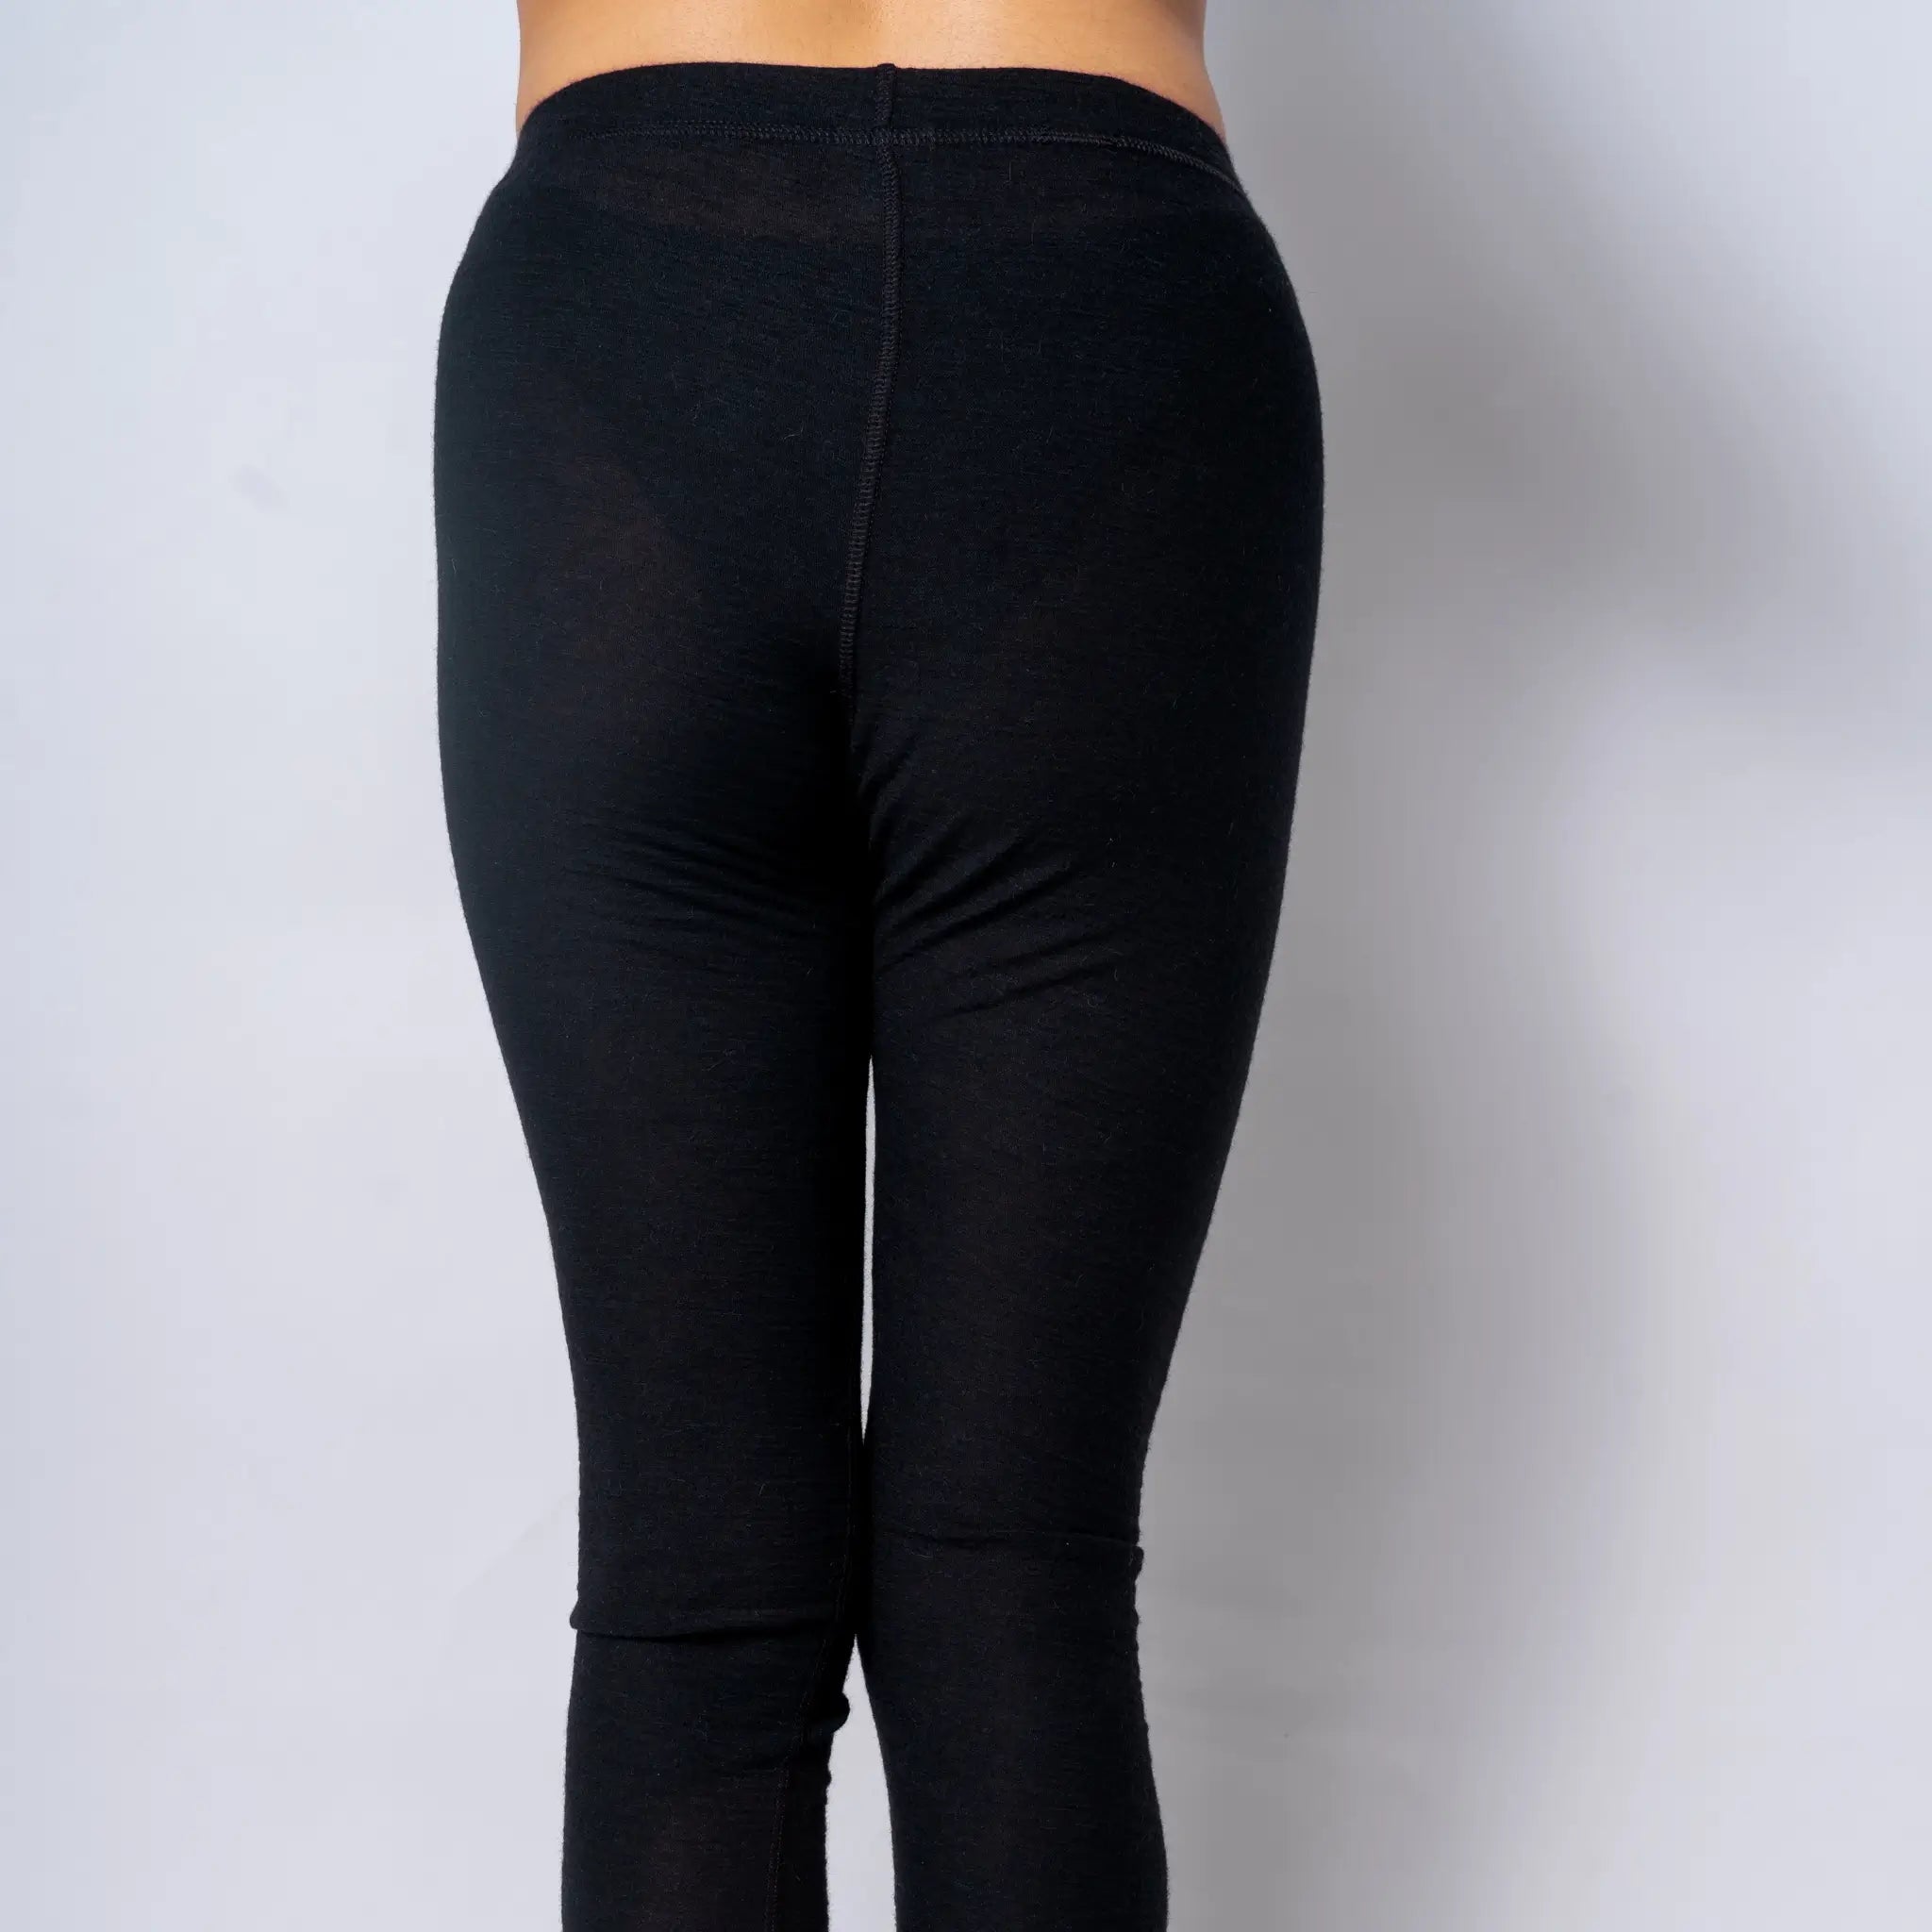 womens leggings ultralight 160 breathable color black